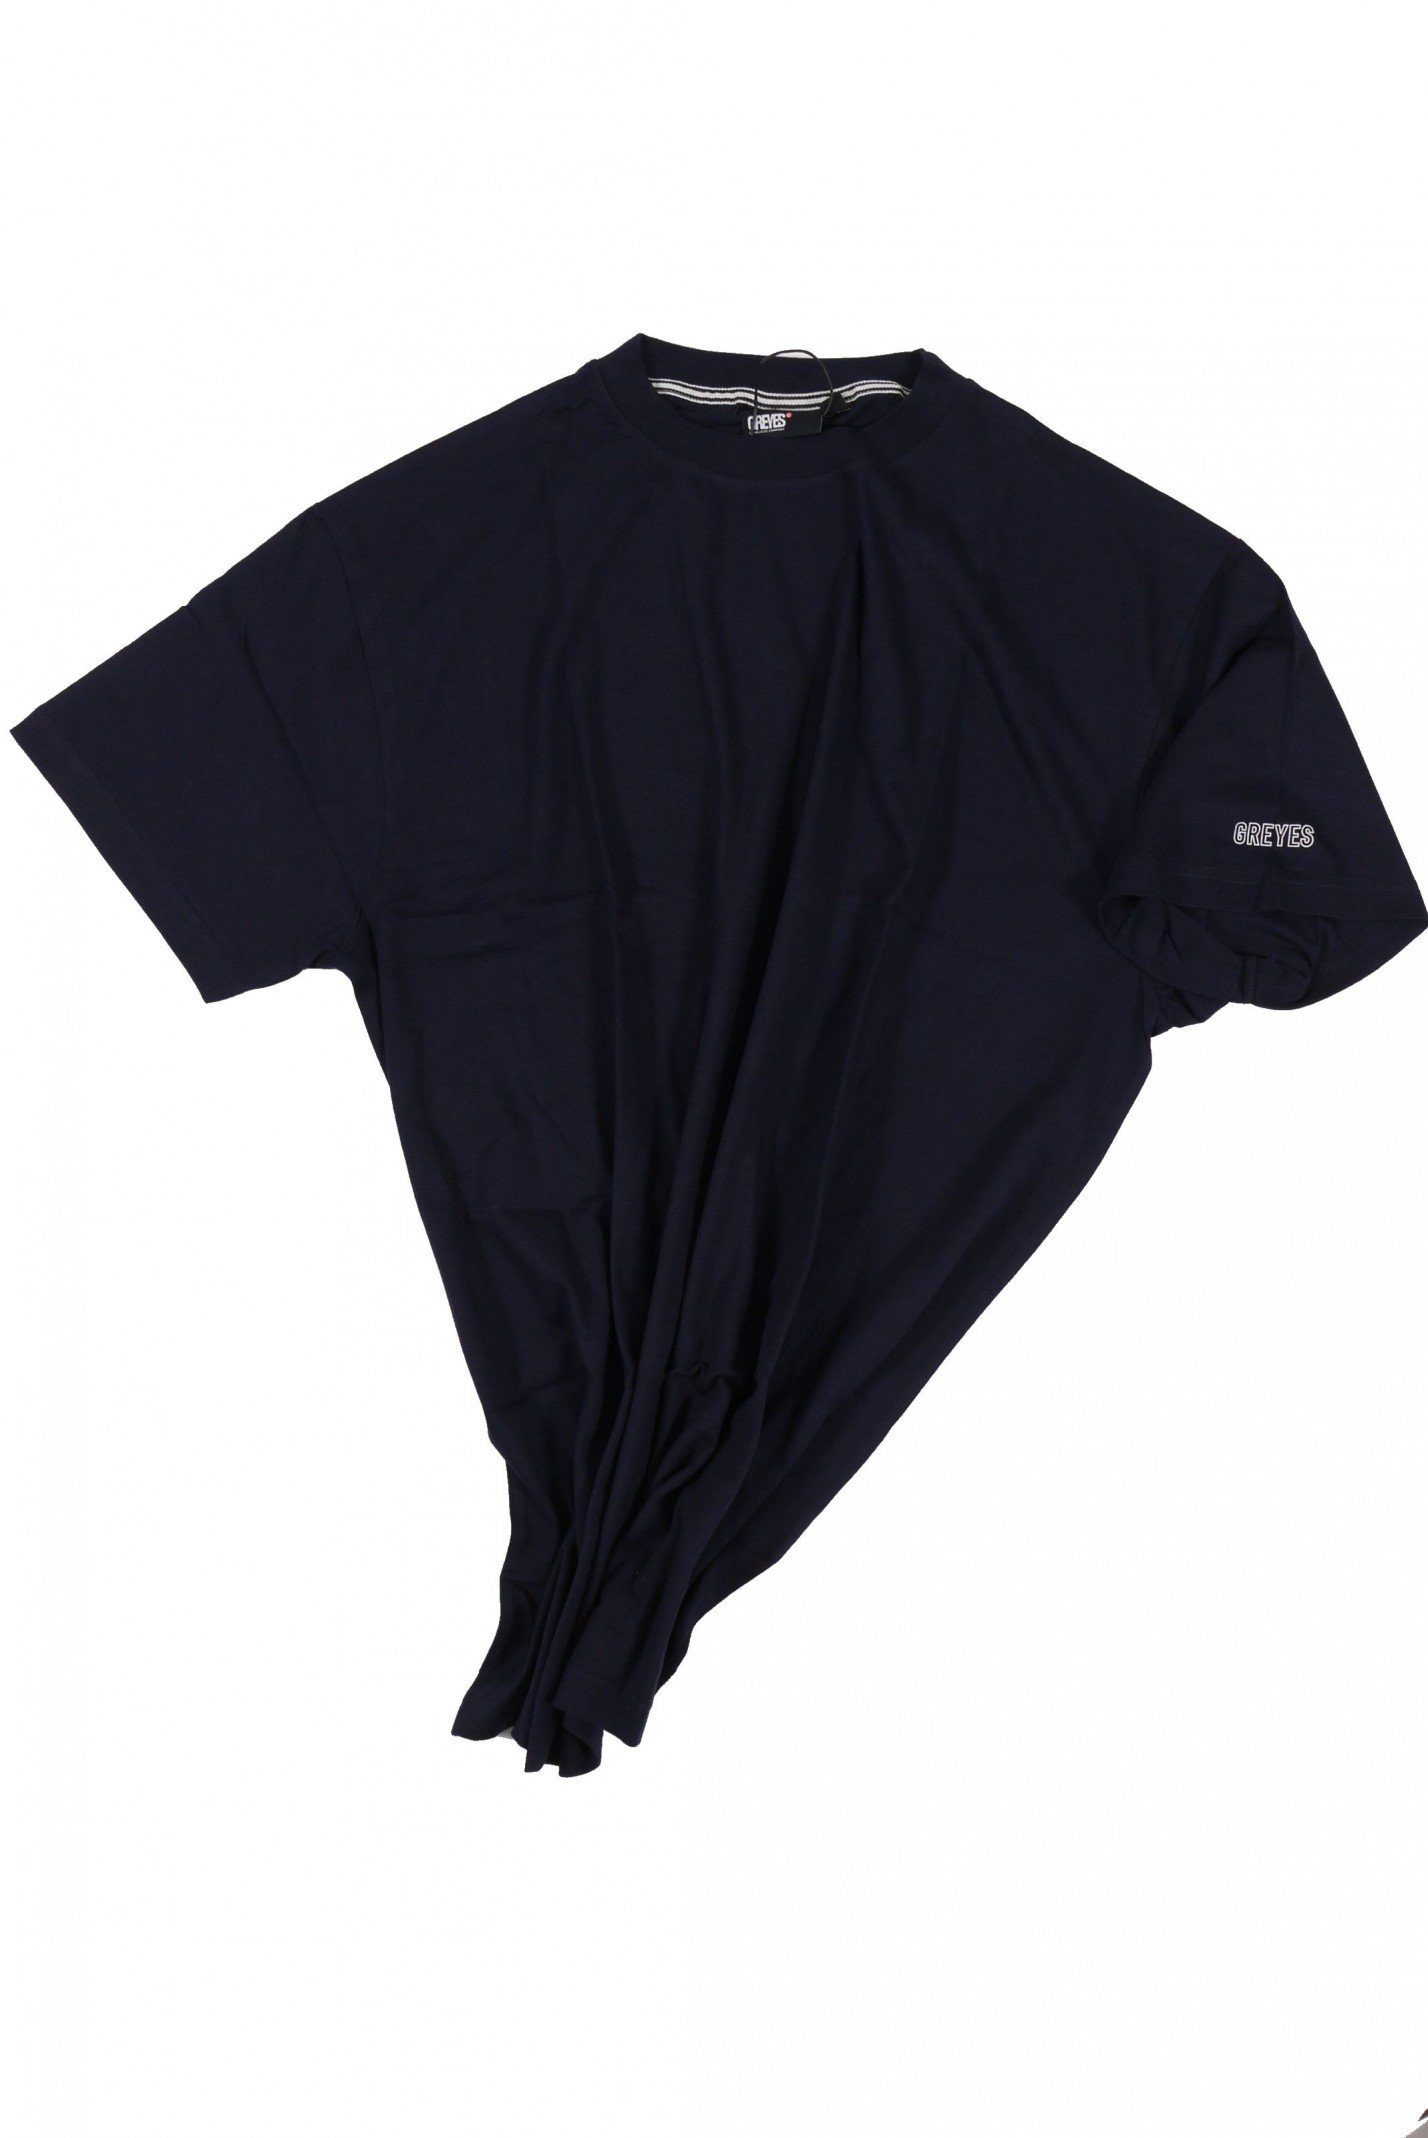 north 56 4 T-Shirt T-Shirt von Allsize in Herrenübergröße bis 8XL, dunkelblau